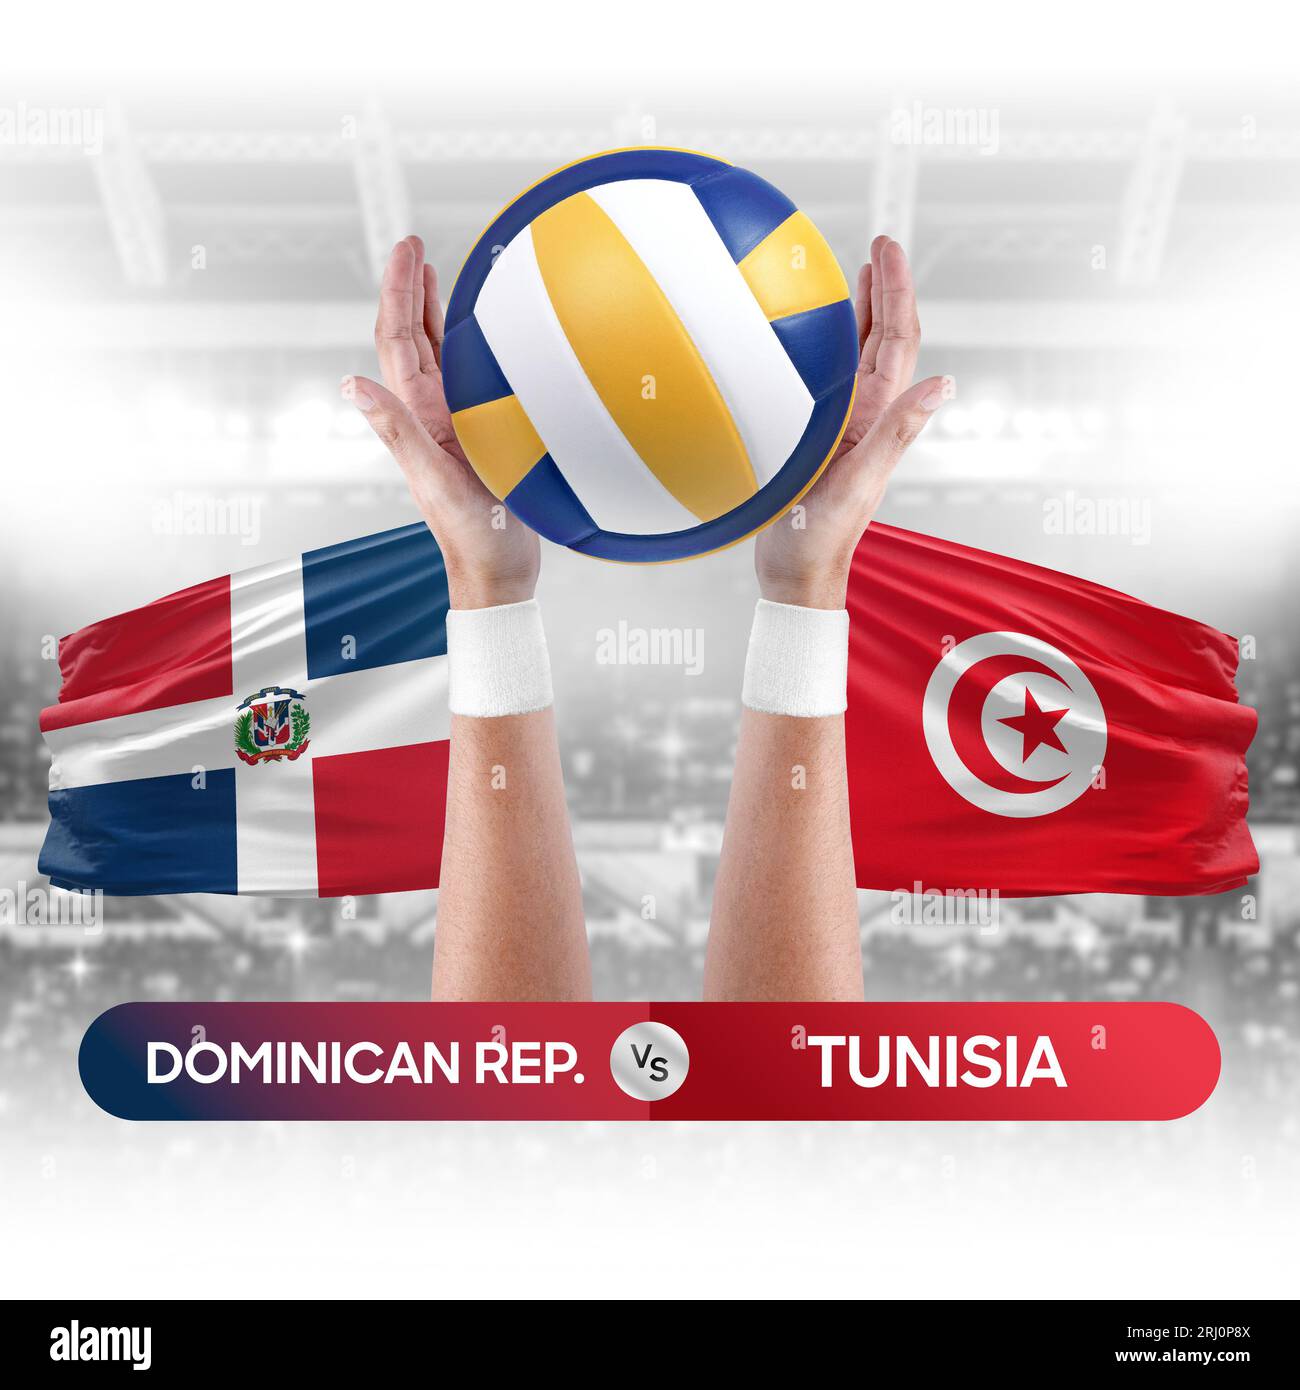 República Dominicana vs Túnez equipos nacionales voleibol voleibol bola partido concepto de competencia. Foto de stock